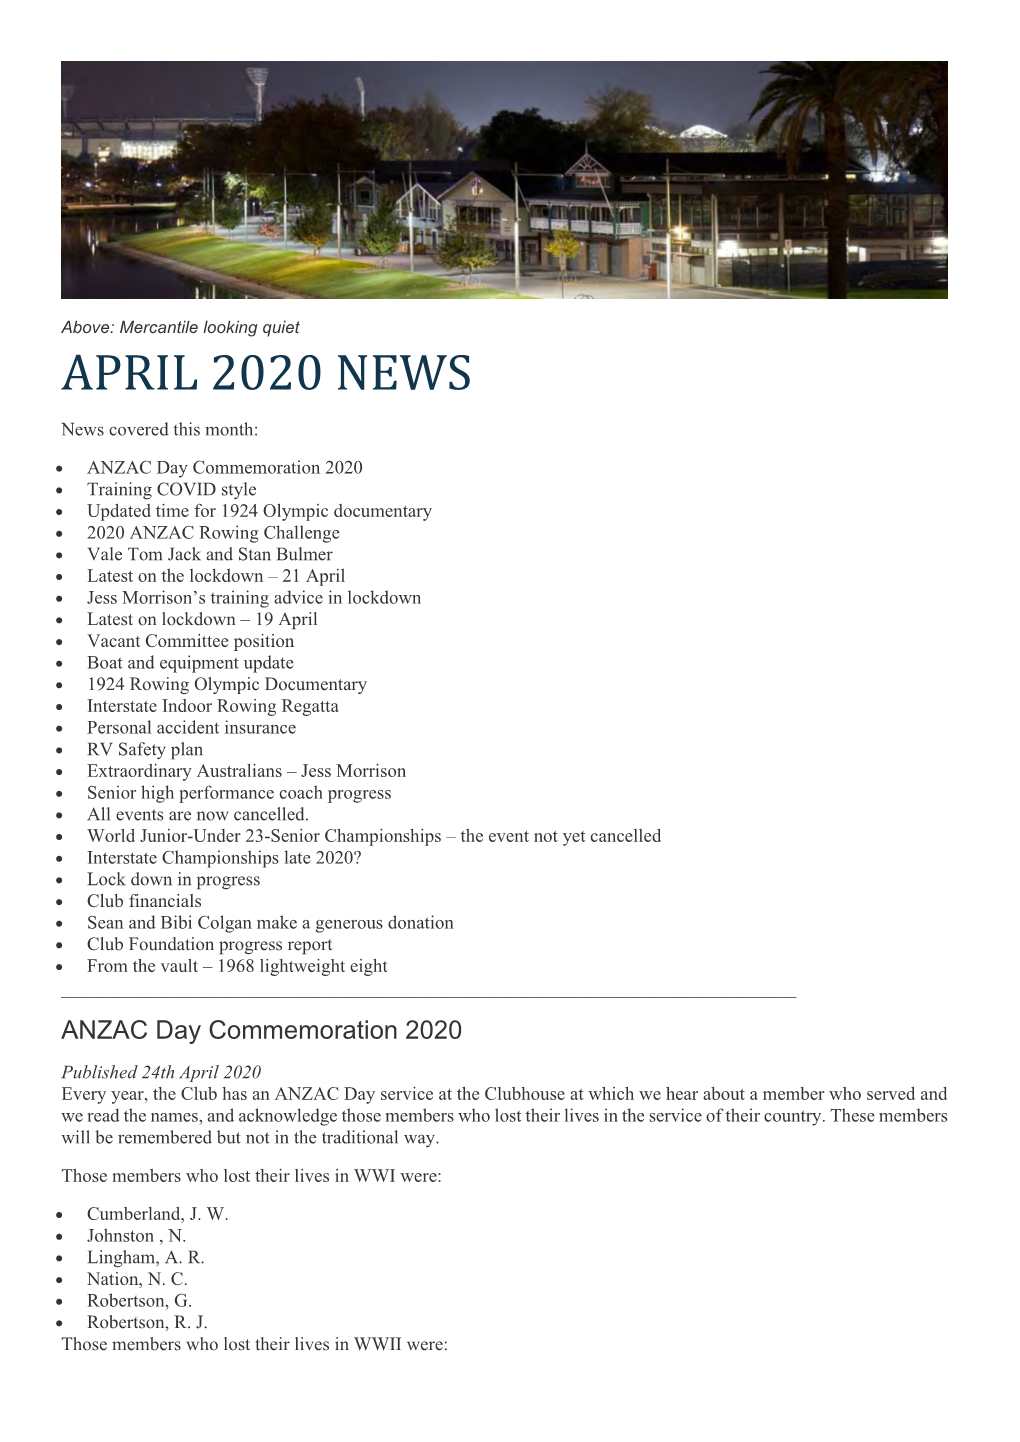 April 2020 News